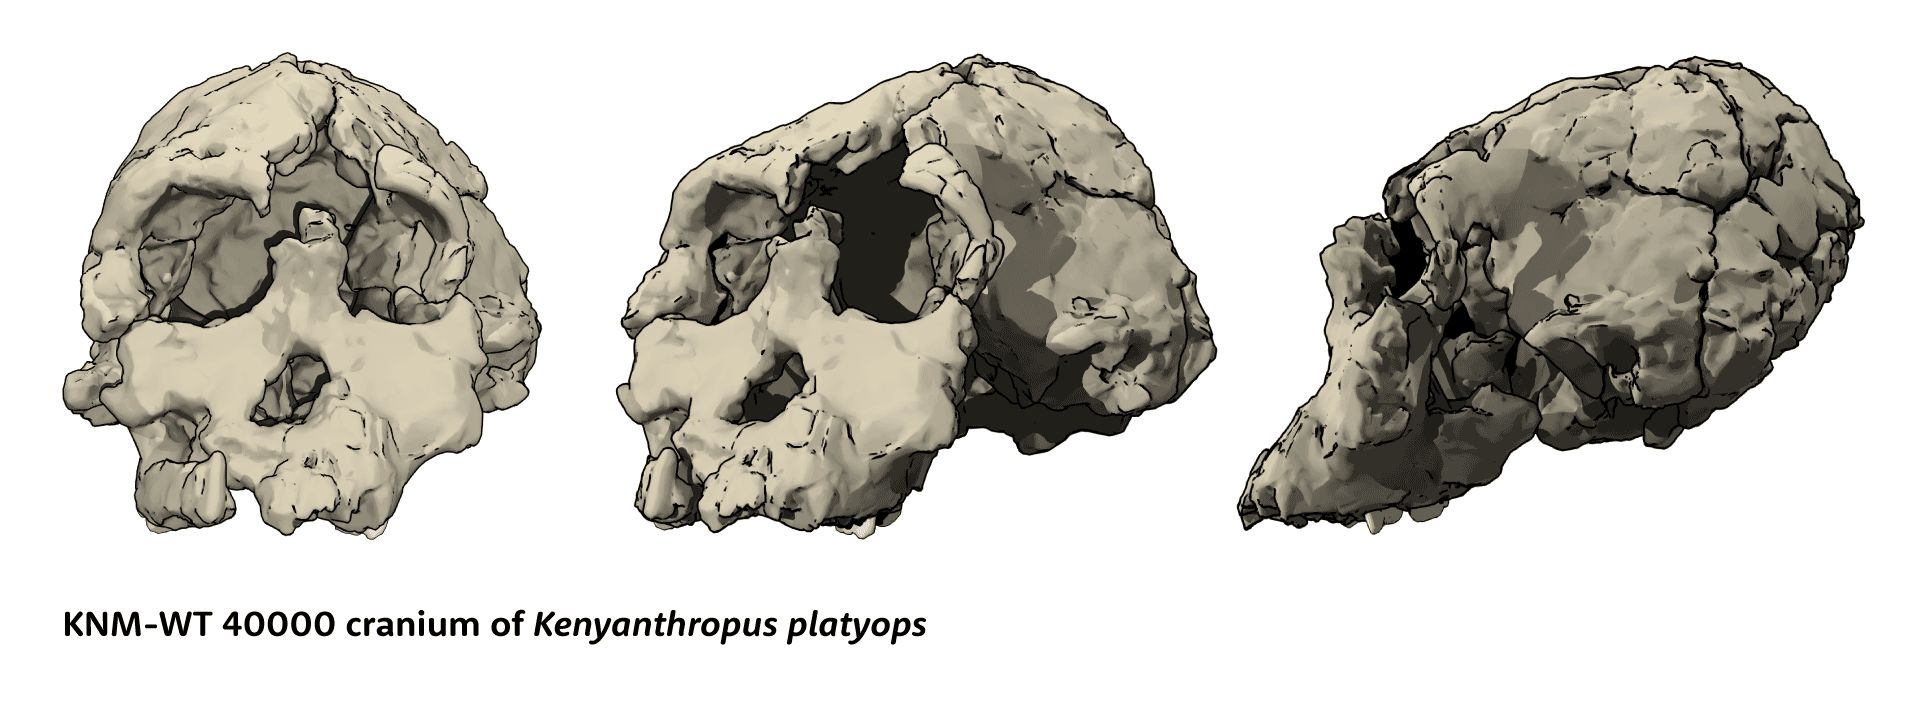 KNM-WT 40000 cranium of Kenyanthropus platyops